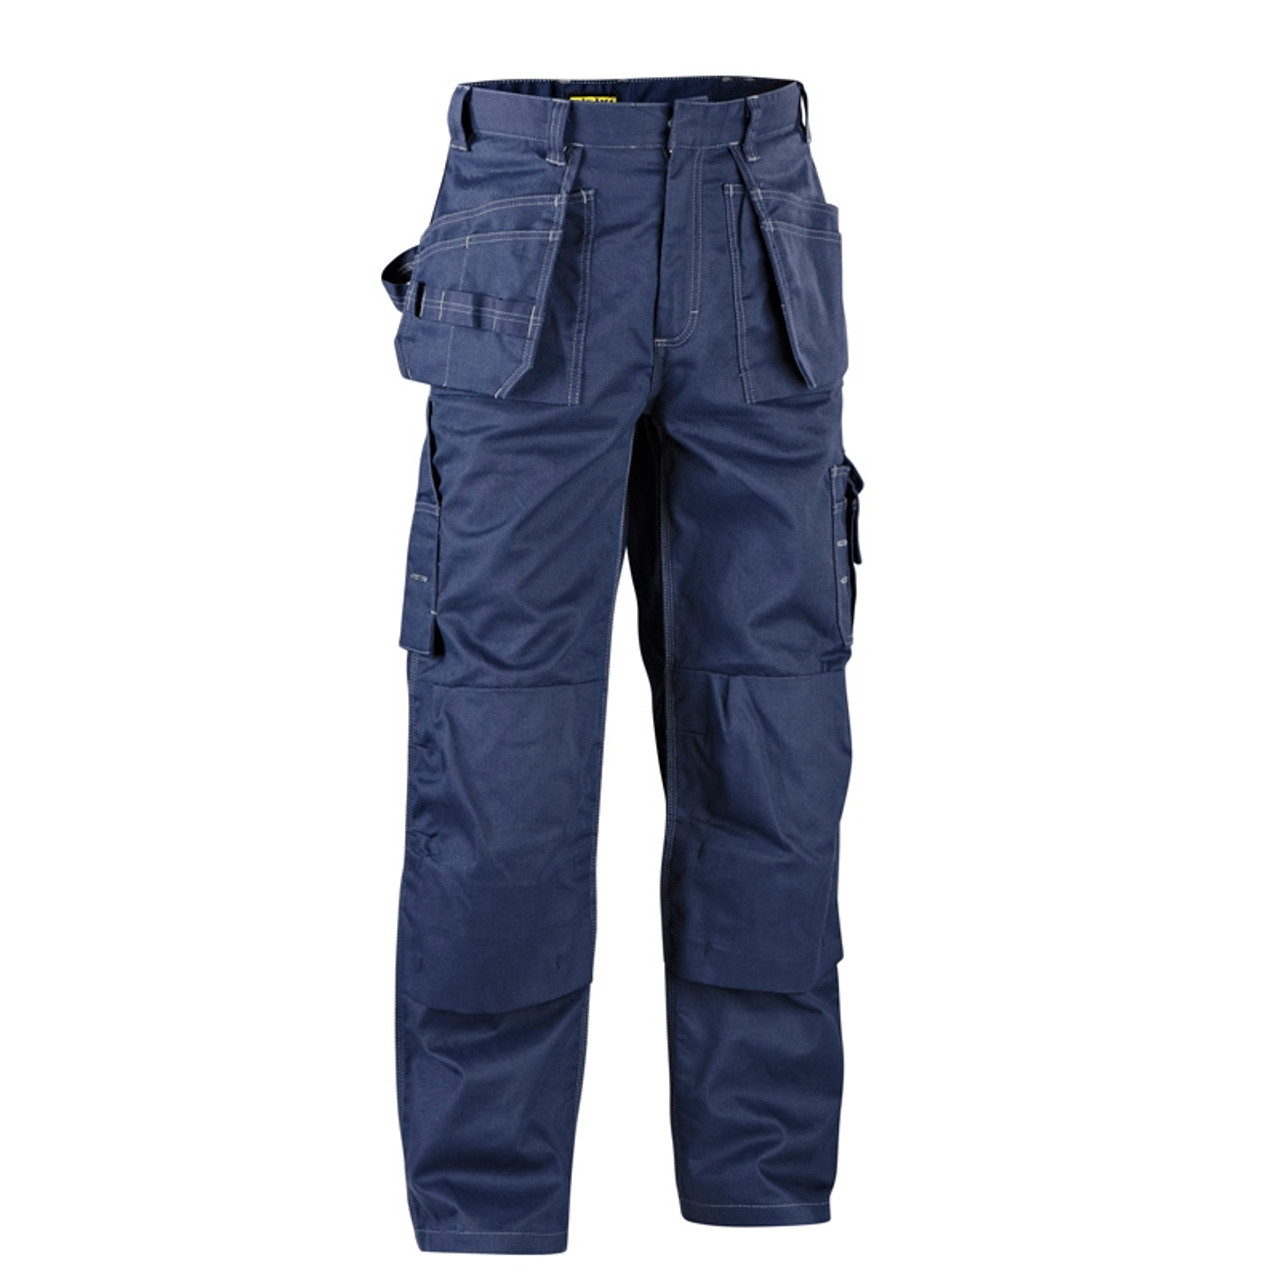 Blaklader FR Navy Blue 9.5 oz. Work Pants 163615508900